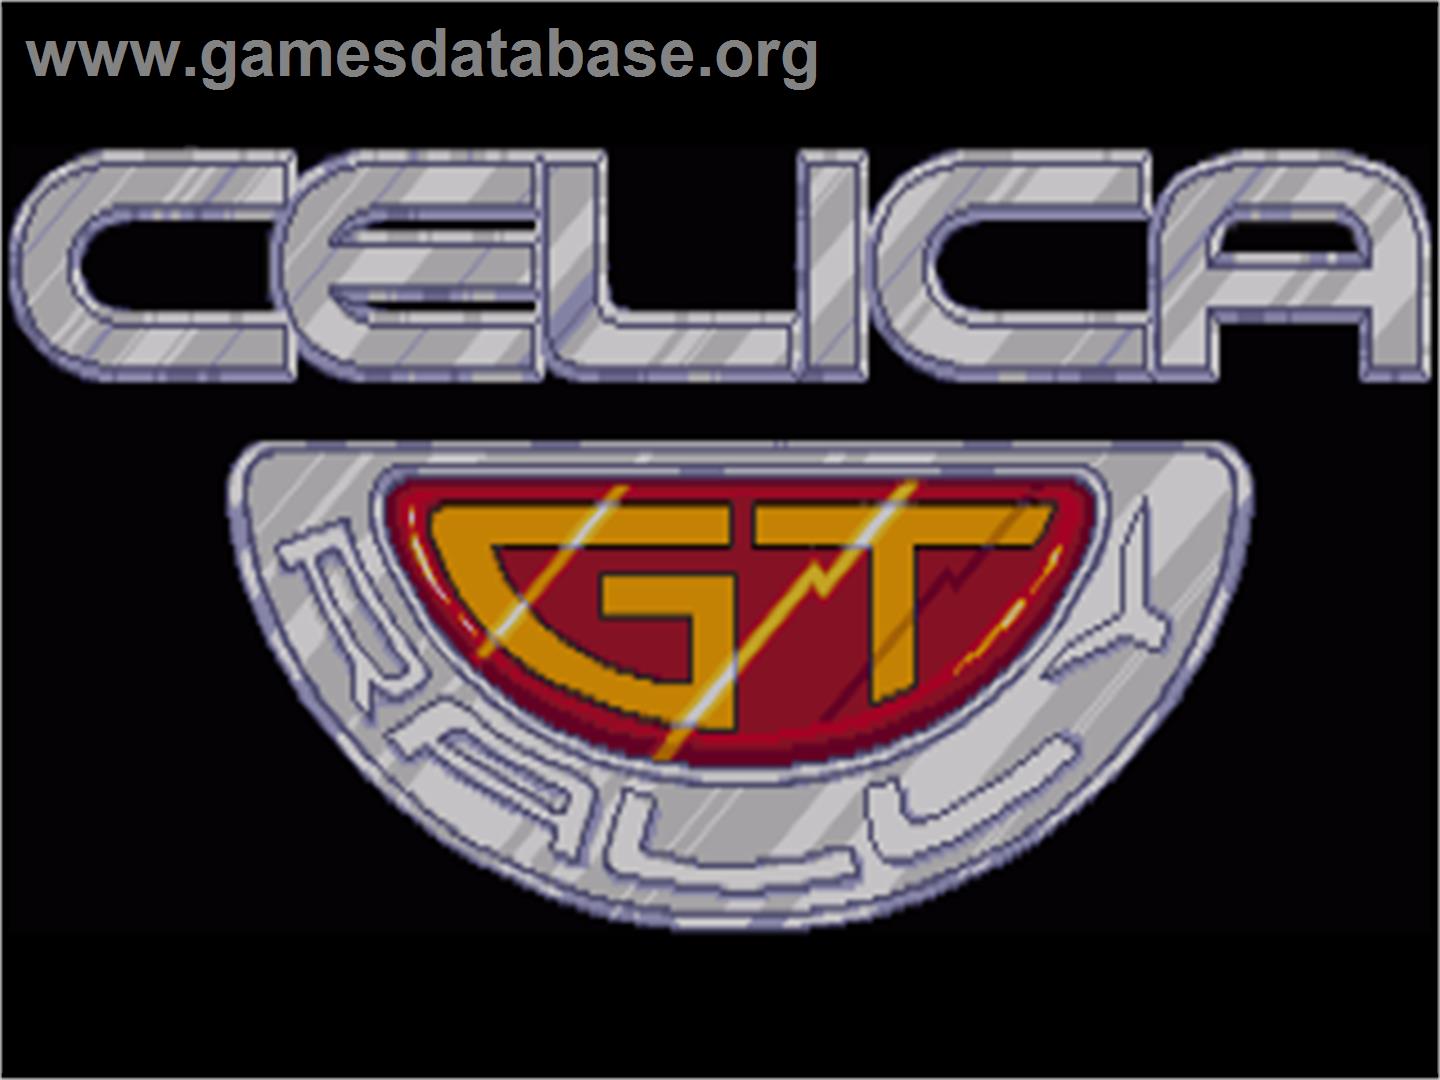 Toyota Celica GT Rally - Commodore Amiga - Artwork - Title Screen